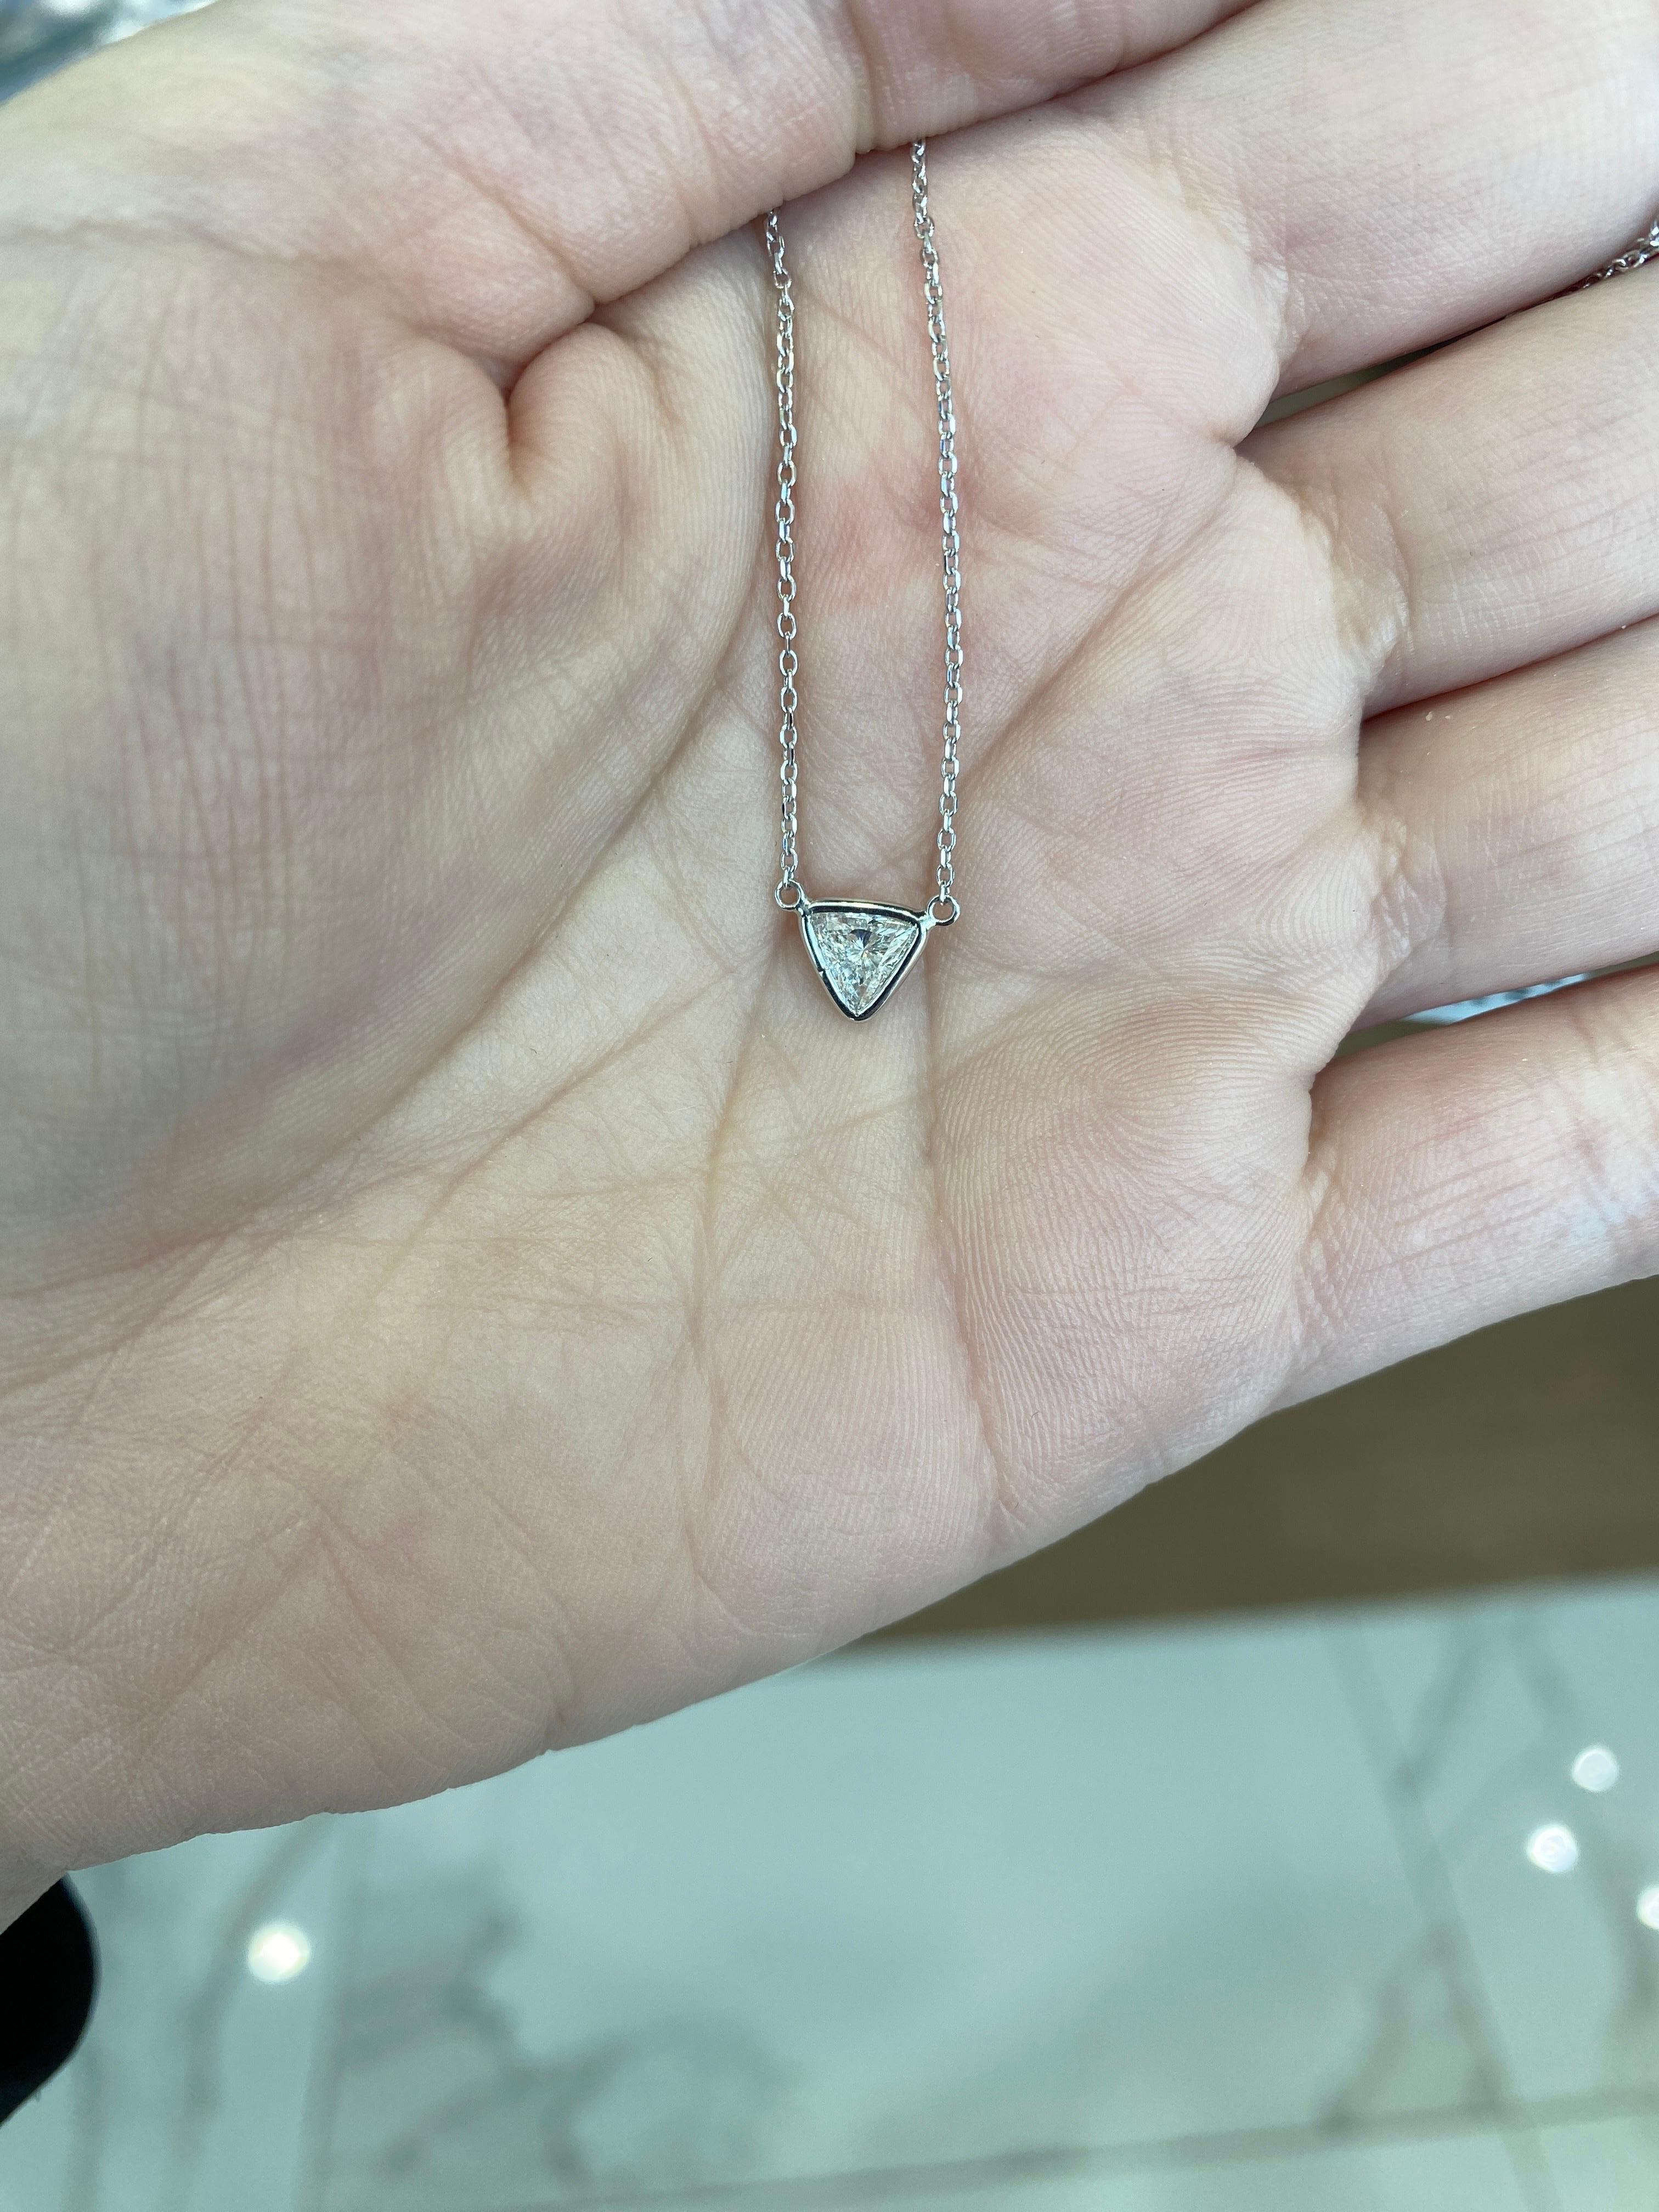 0.46 Carat Natural Trillion Cut Diamond Pendant Necklace, 14k White Gold For Sale 5